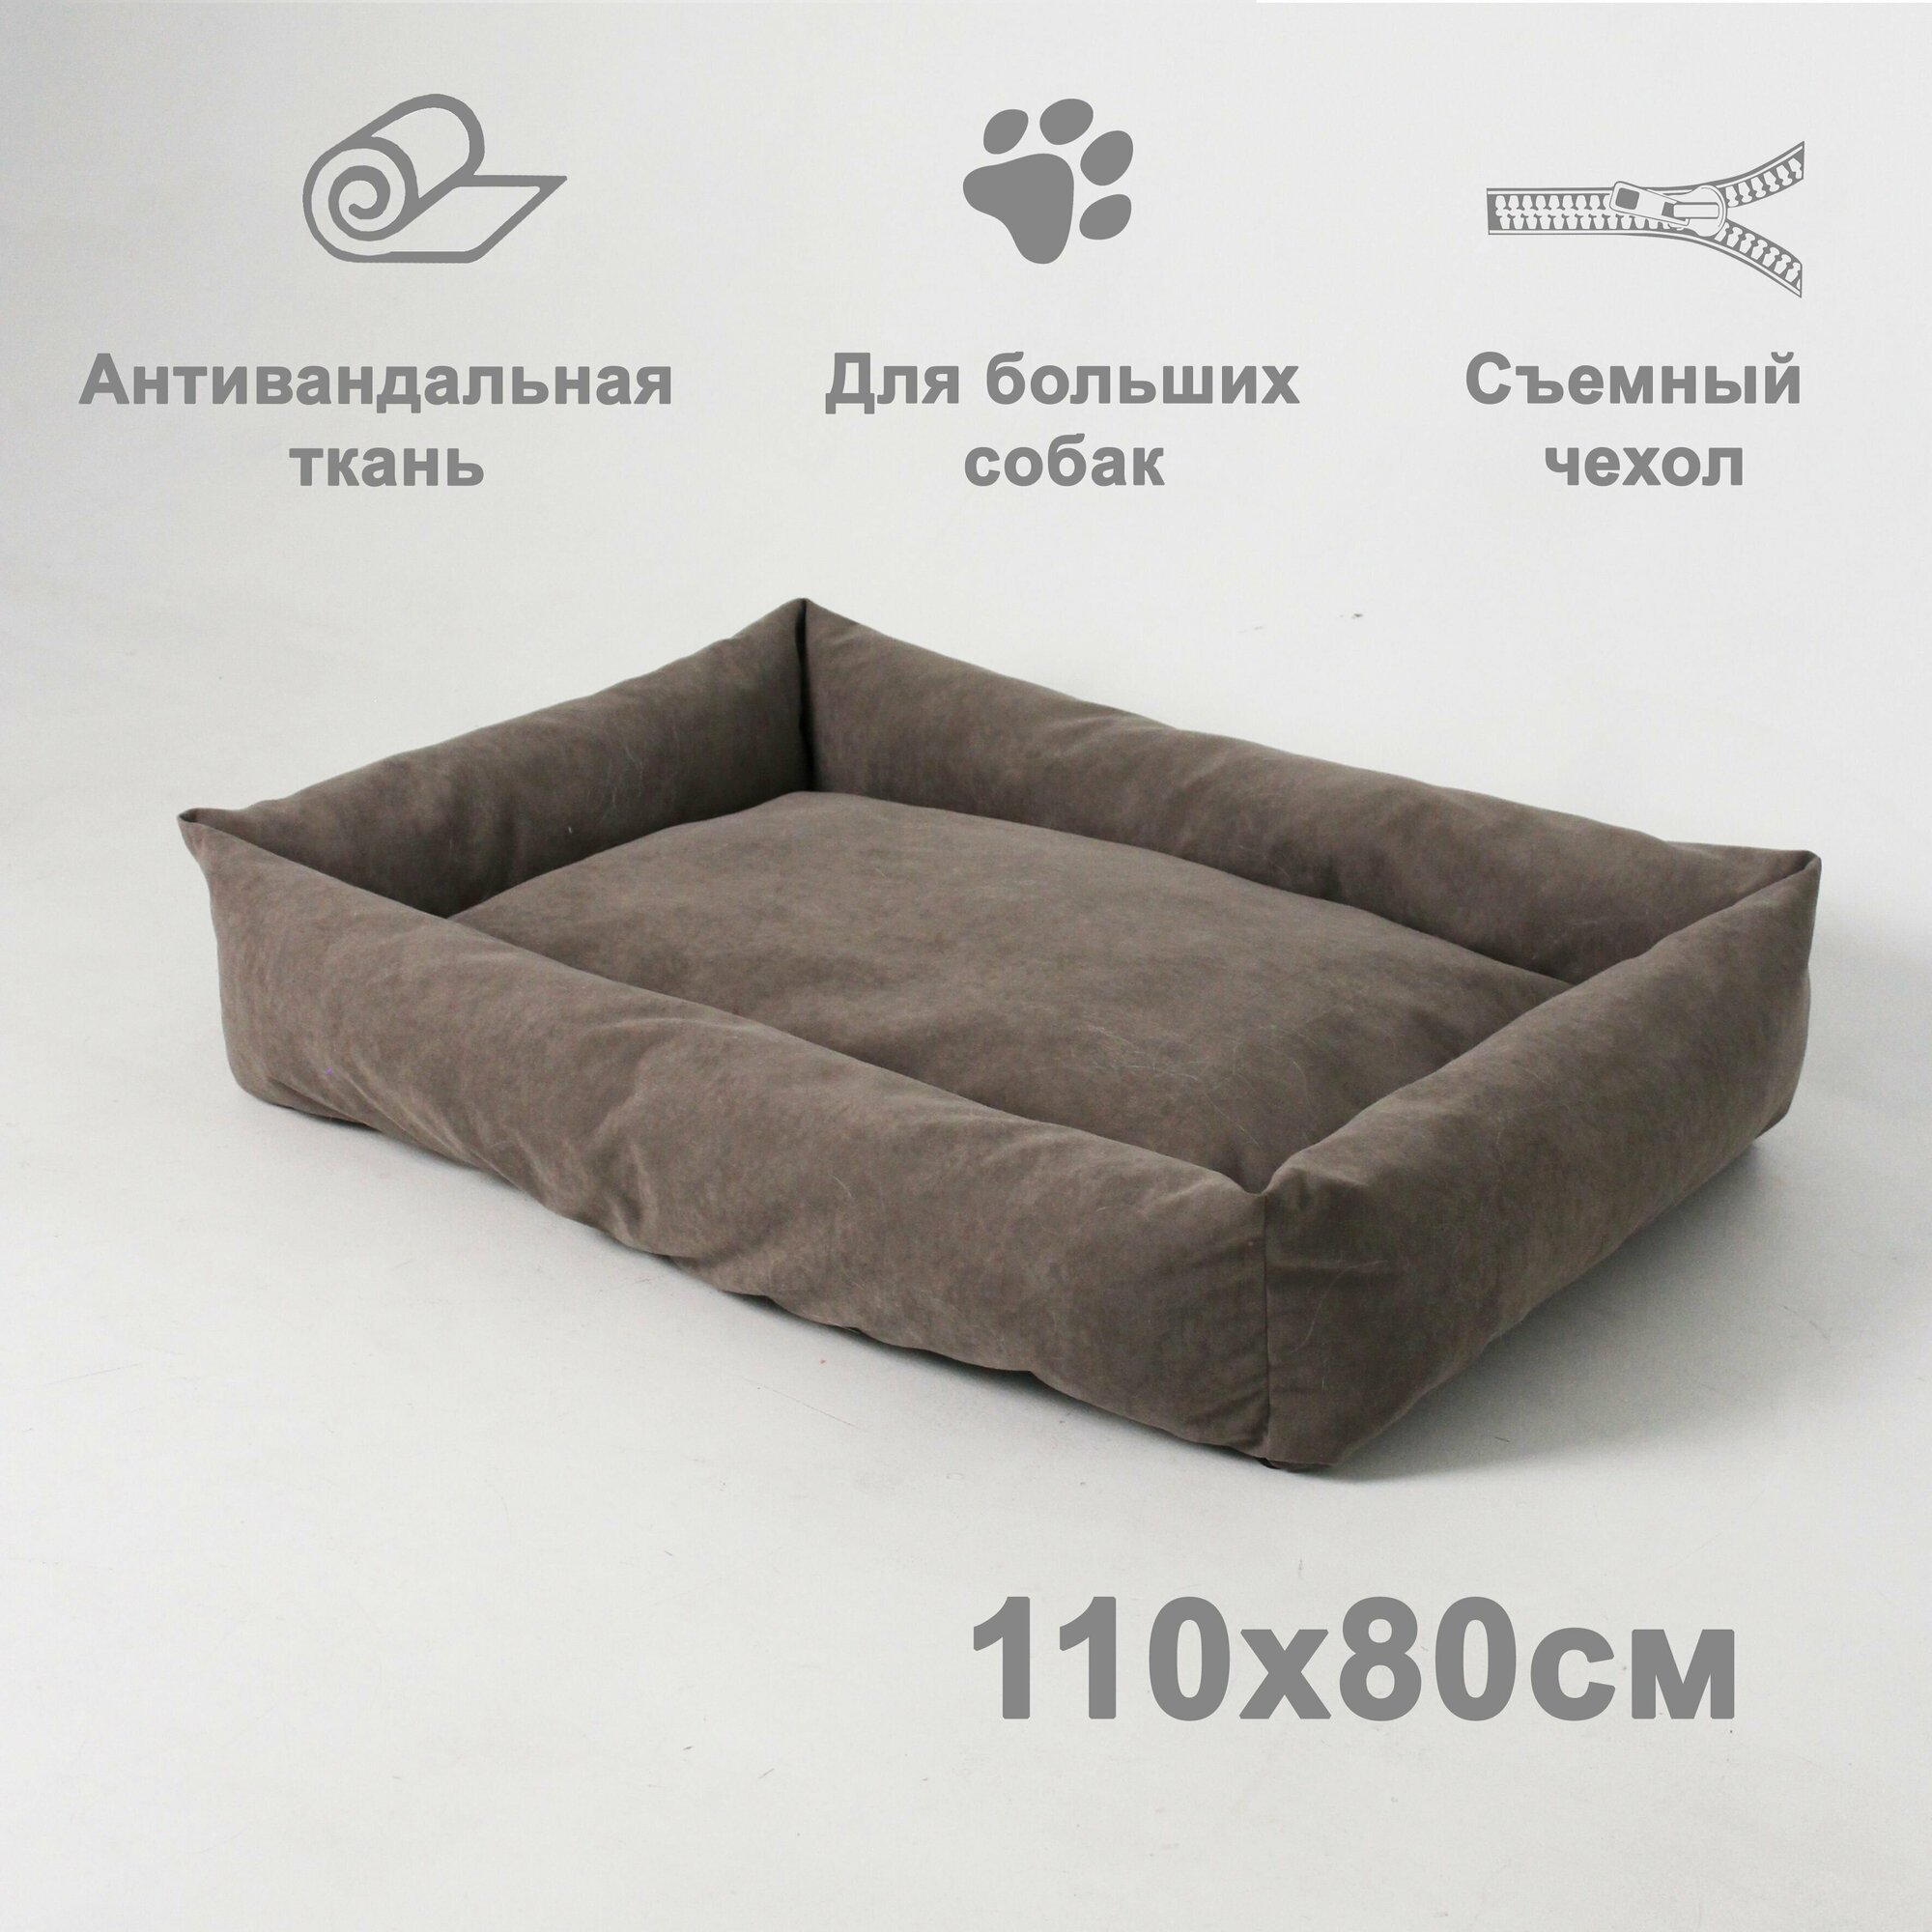 Лежанка для собак со съемным чехлом, 110х80см, антивандальная ткань, цвет коричневый серый - фотография № 1